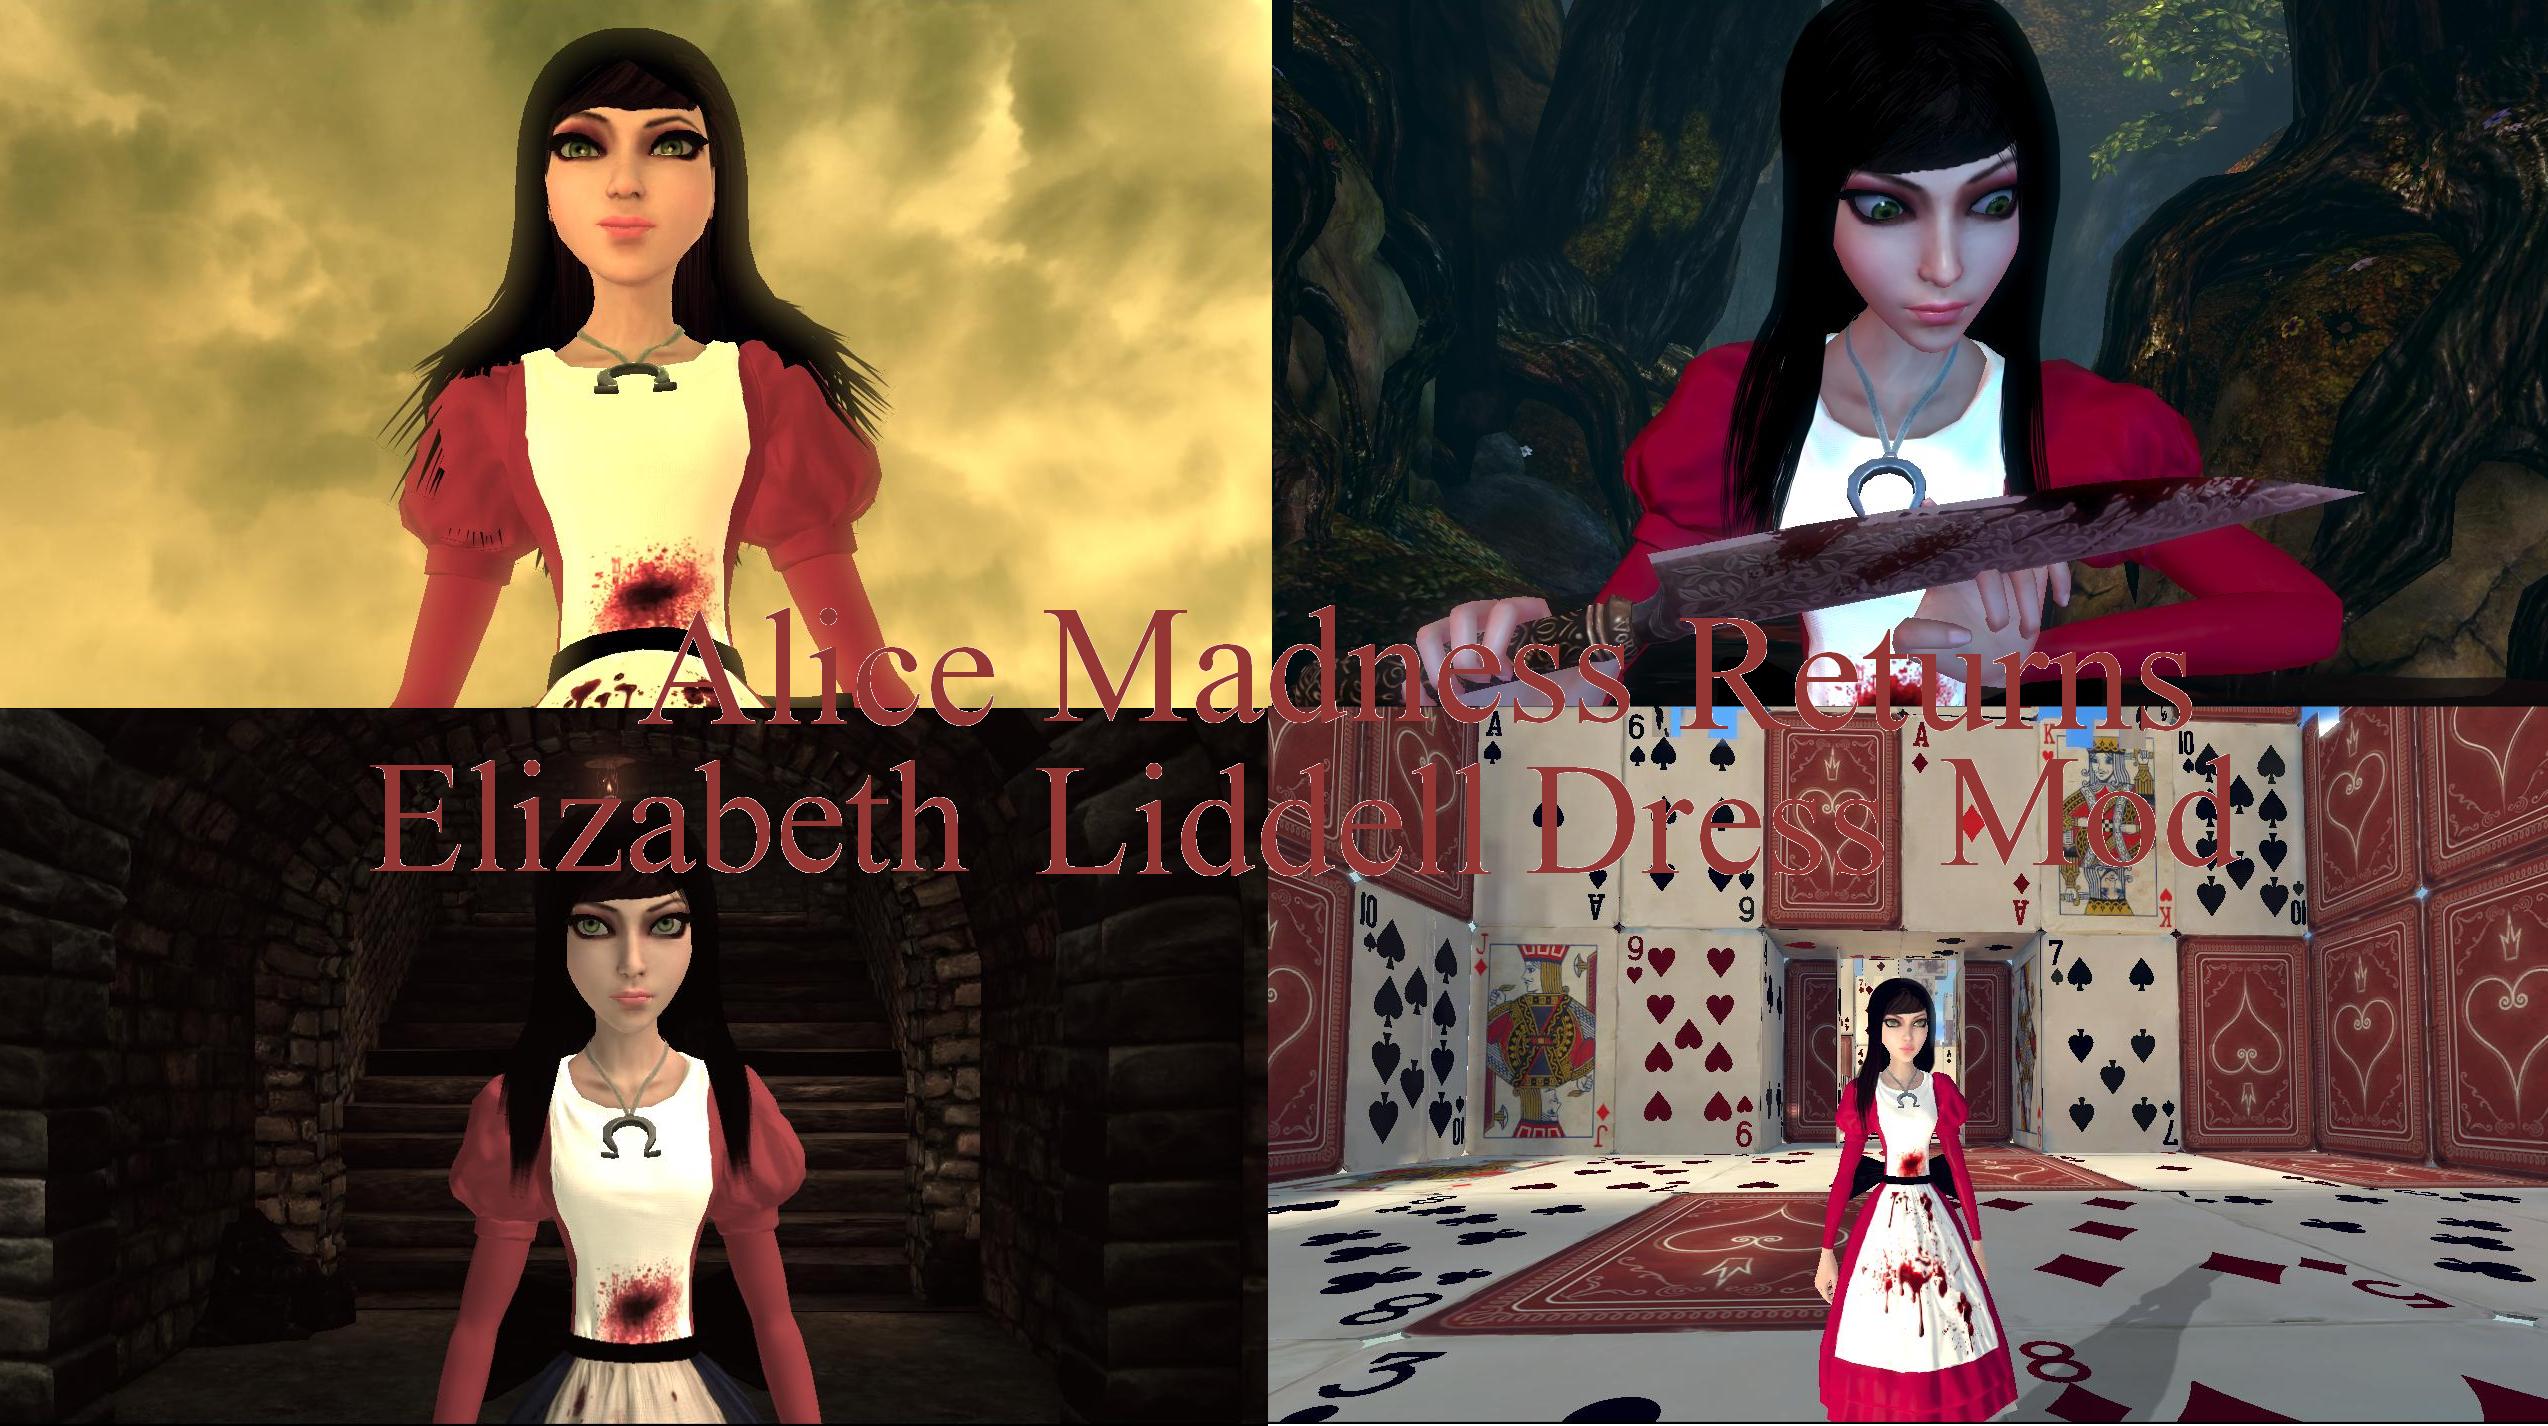 Alice: Madness Returns Elizabeth Liddell Mod by LulzyTeen on. www.deviantar...